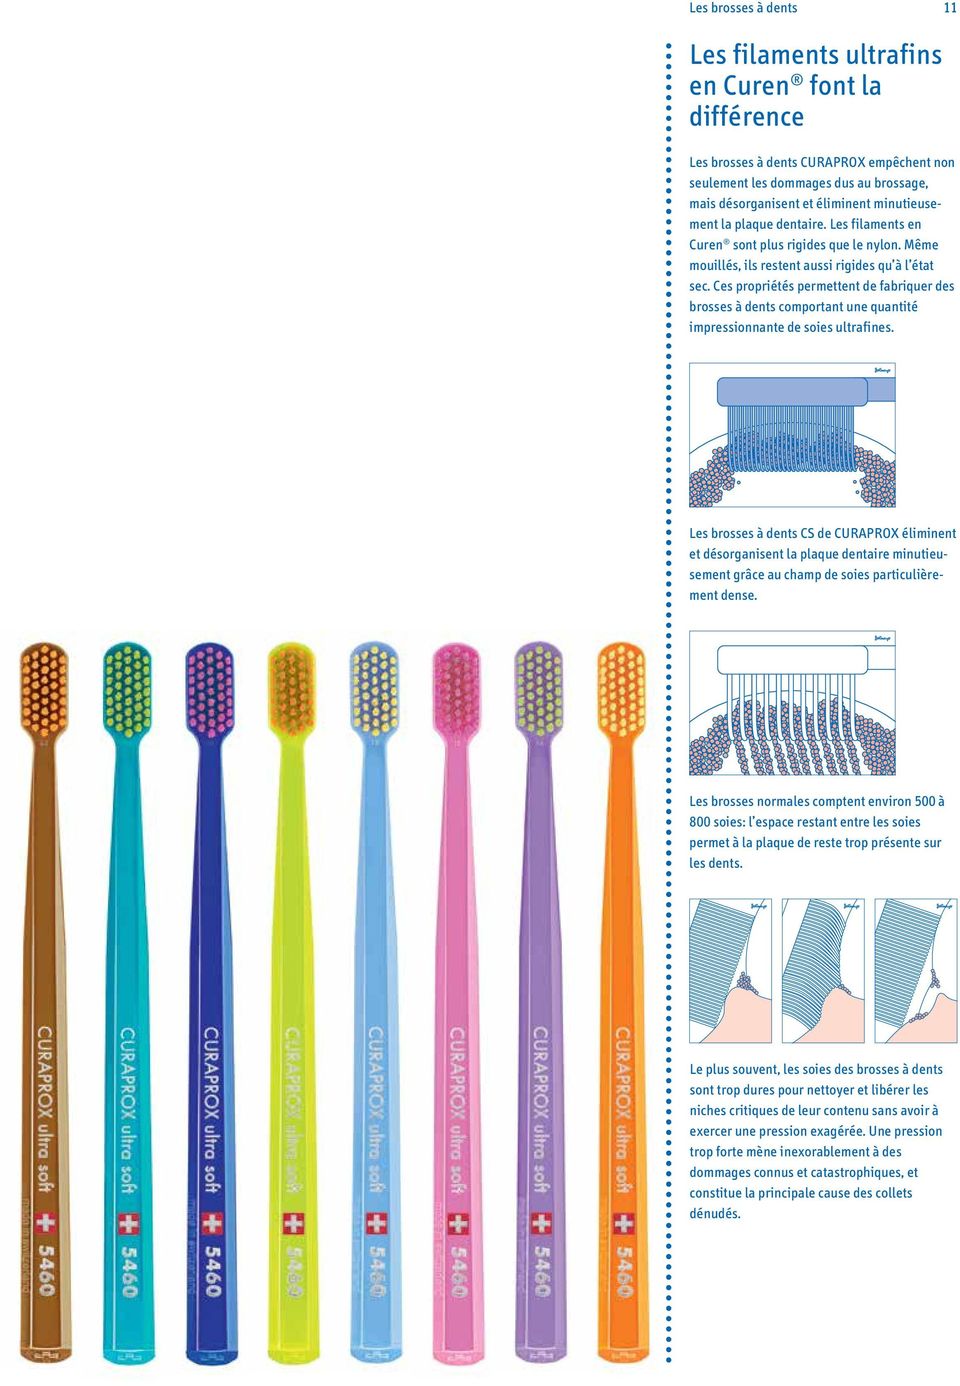 Ces propriétés permettent de fabriquer des brosses à dents comportant une quantité impressionnante de soies ultrafines.